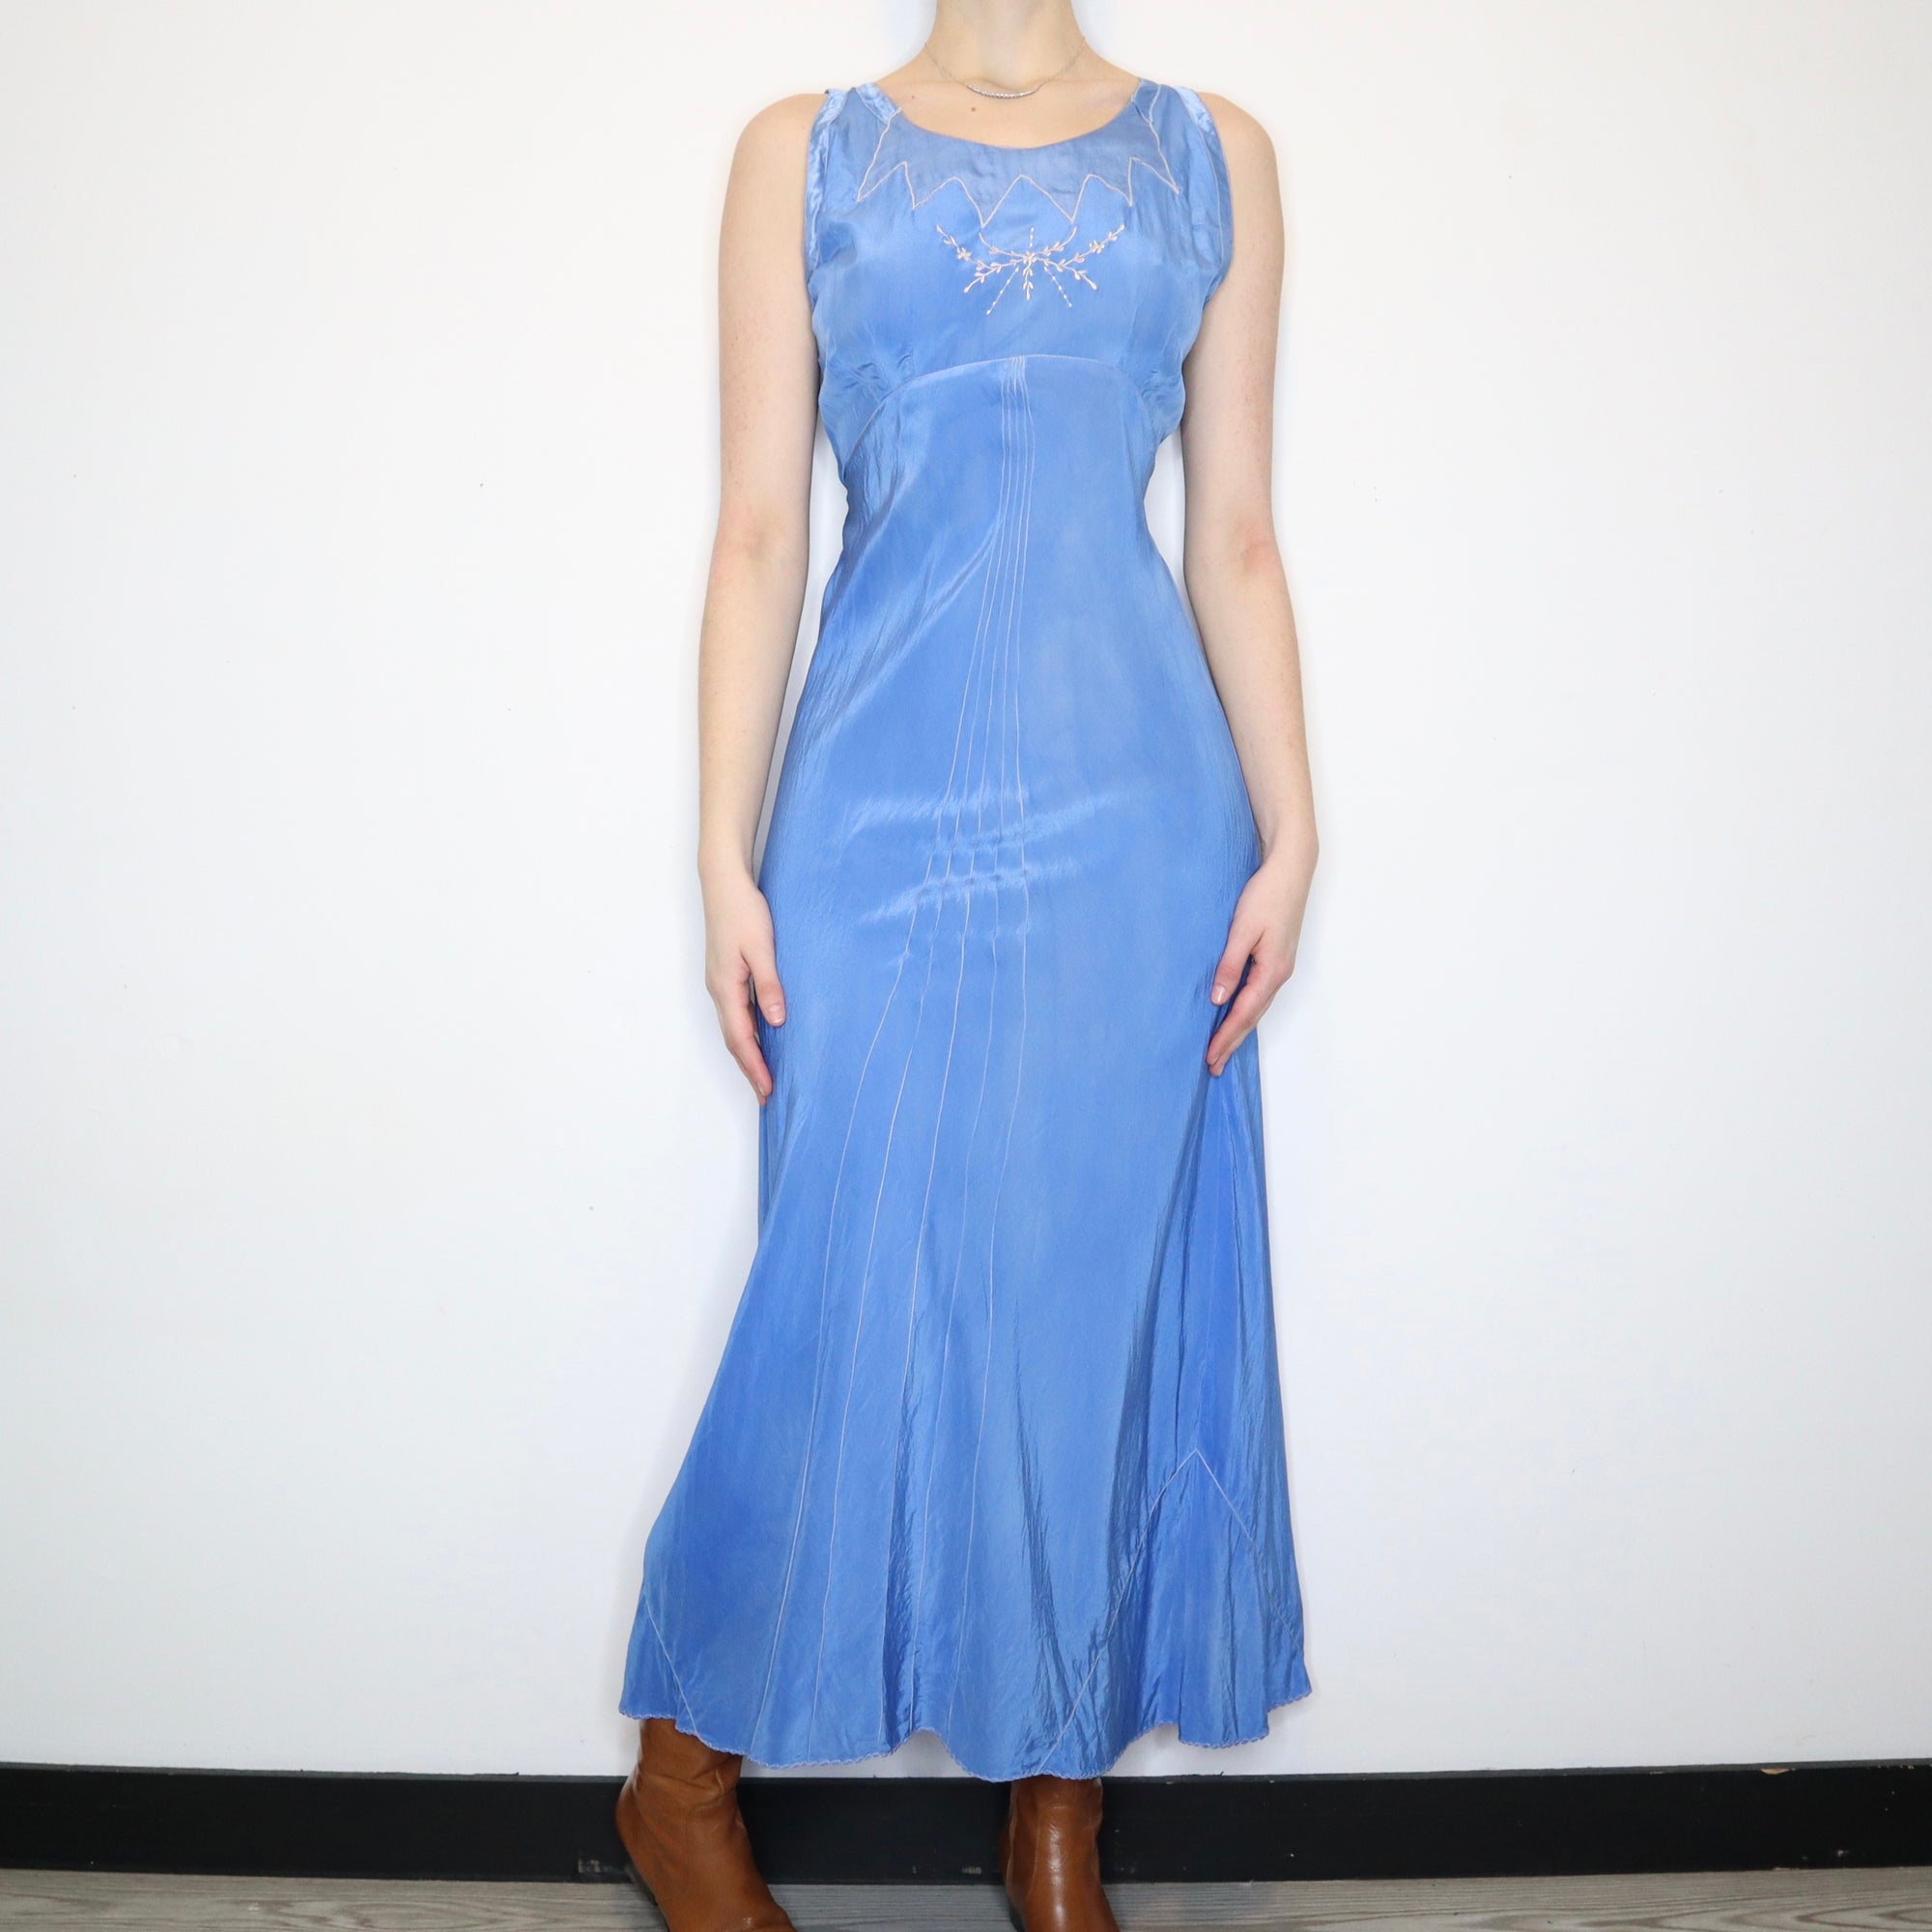 Antique Blue Nightgown (Medium)